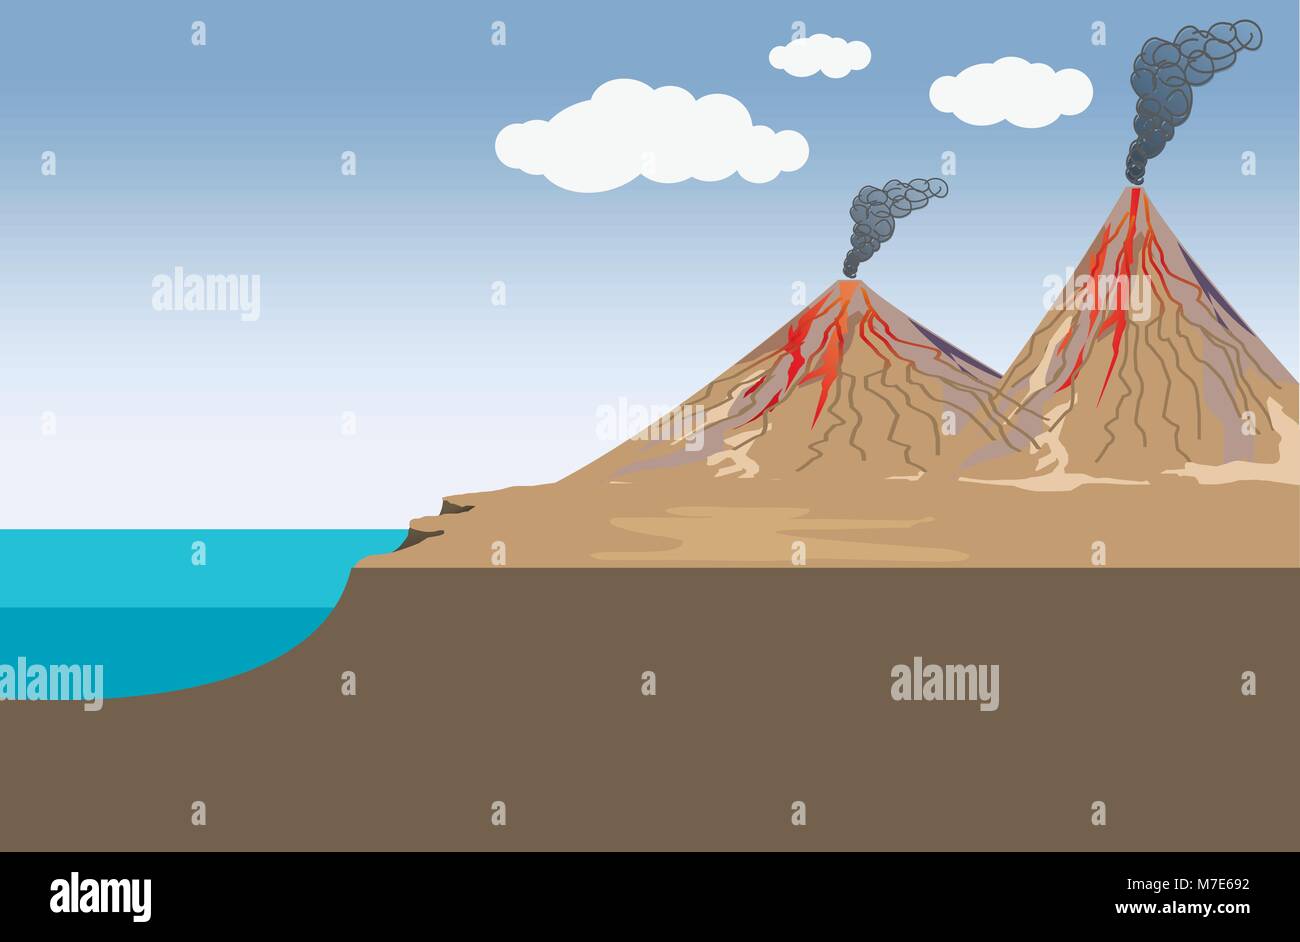 Vulkan ist ein Bruch in der Erdkruste ein Planetengetriebe-Objekt, wie Erde, der es ermöglicht, dass heiße Lava, Asche und Gase aus einem Magma cham zu entkommen Stock Vektor